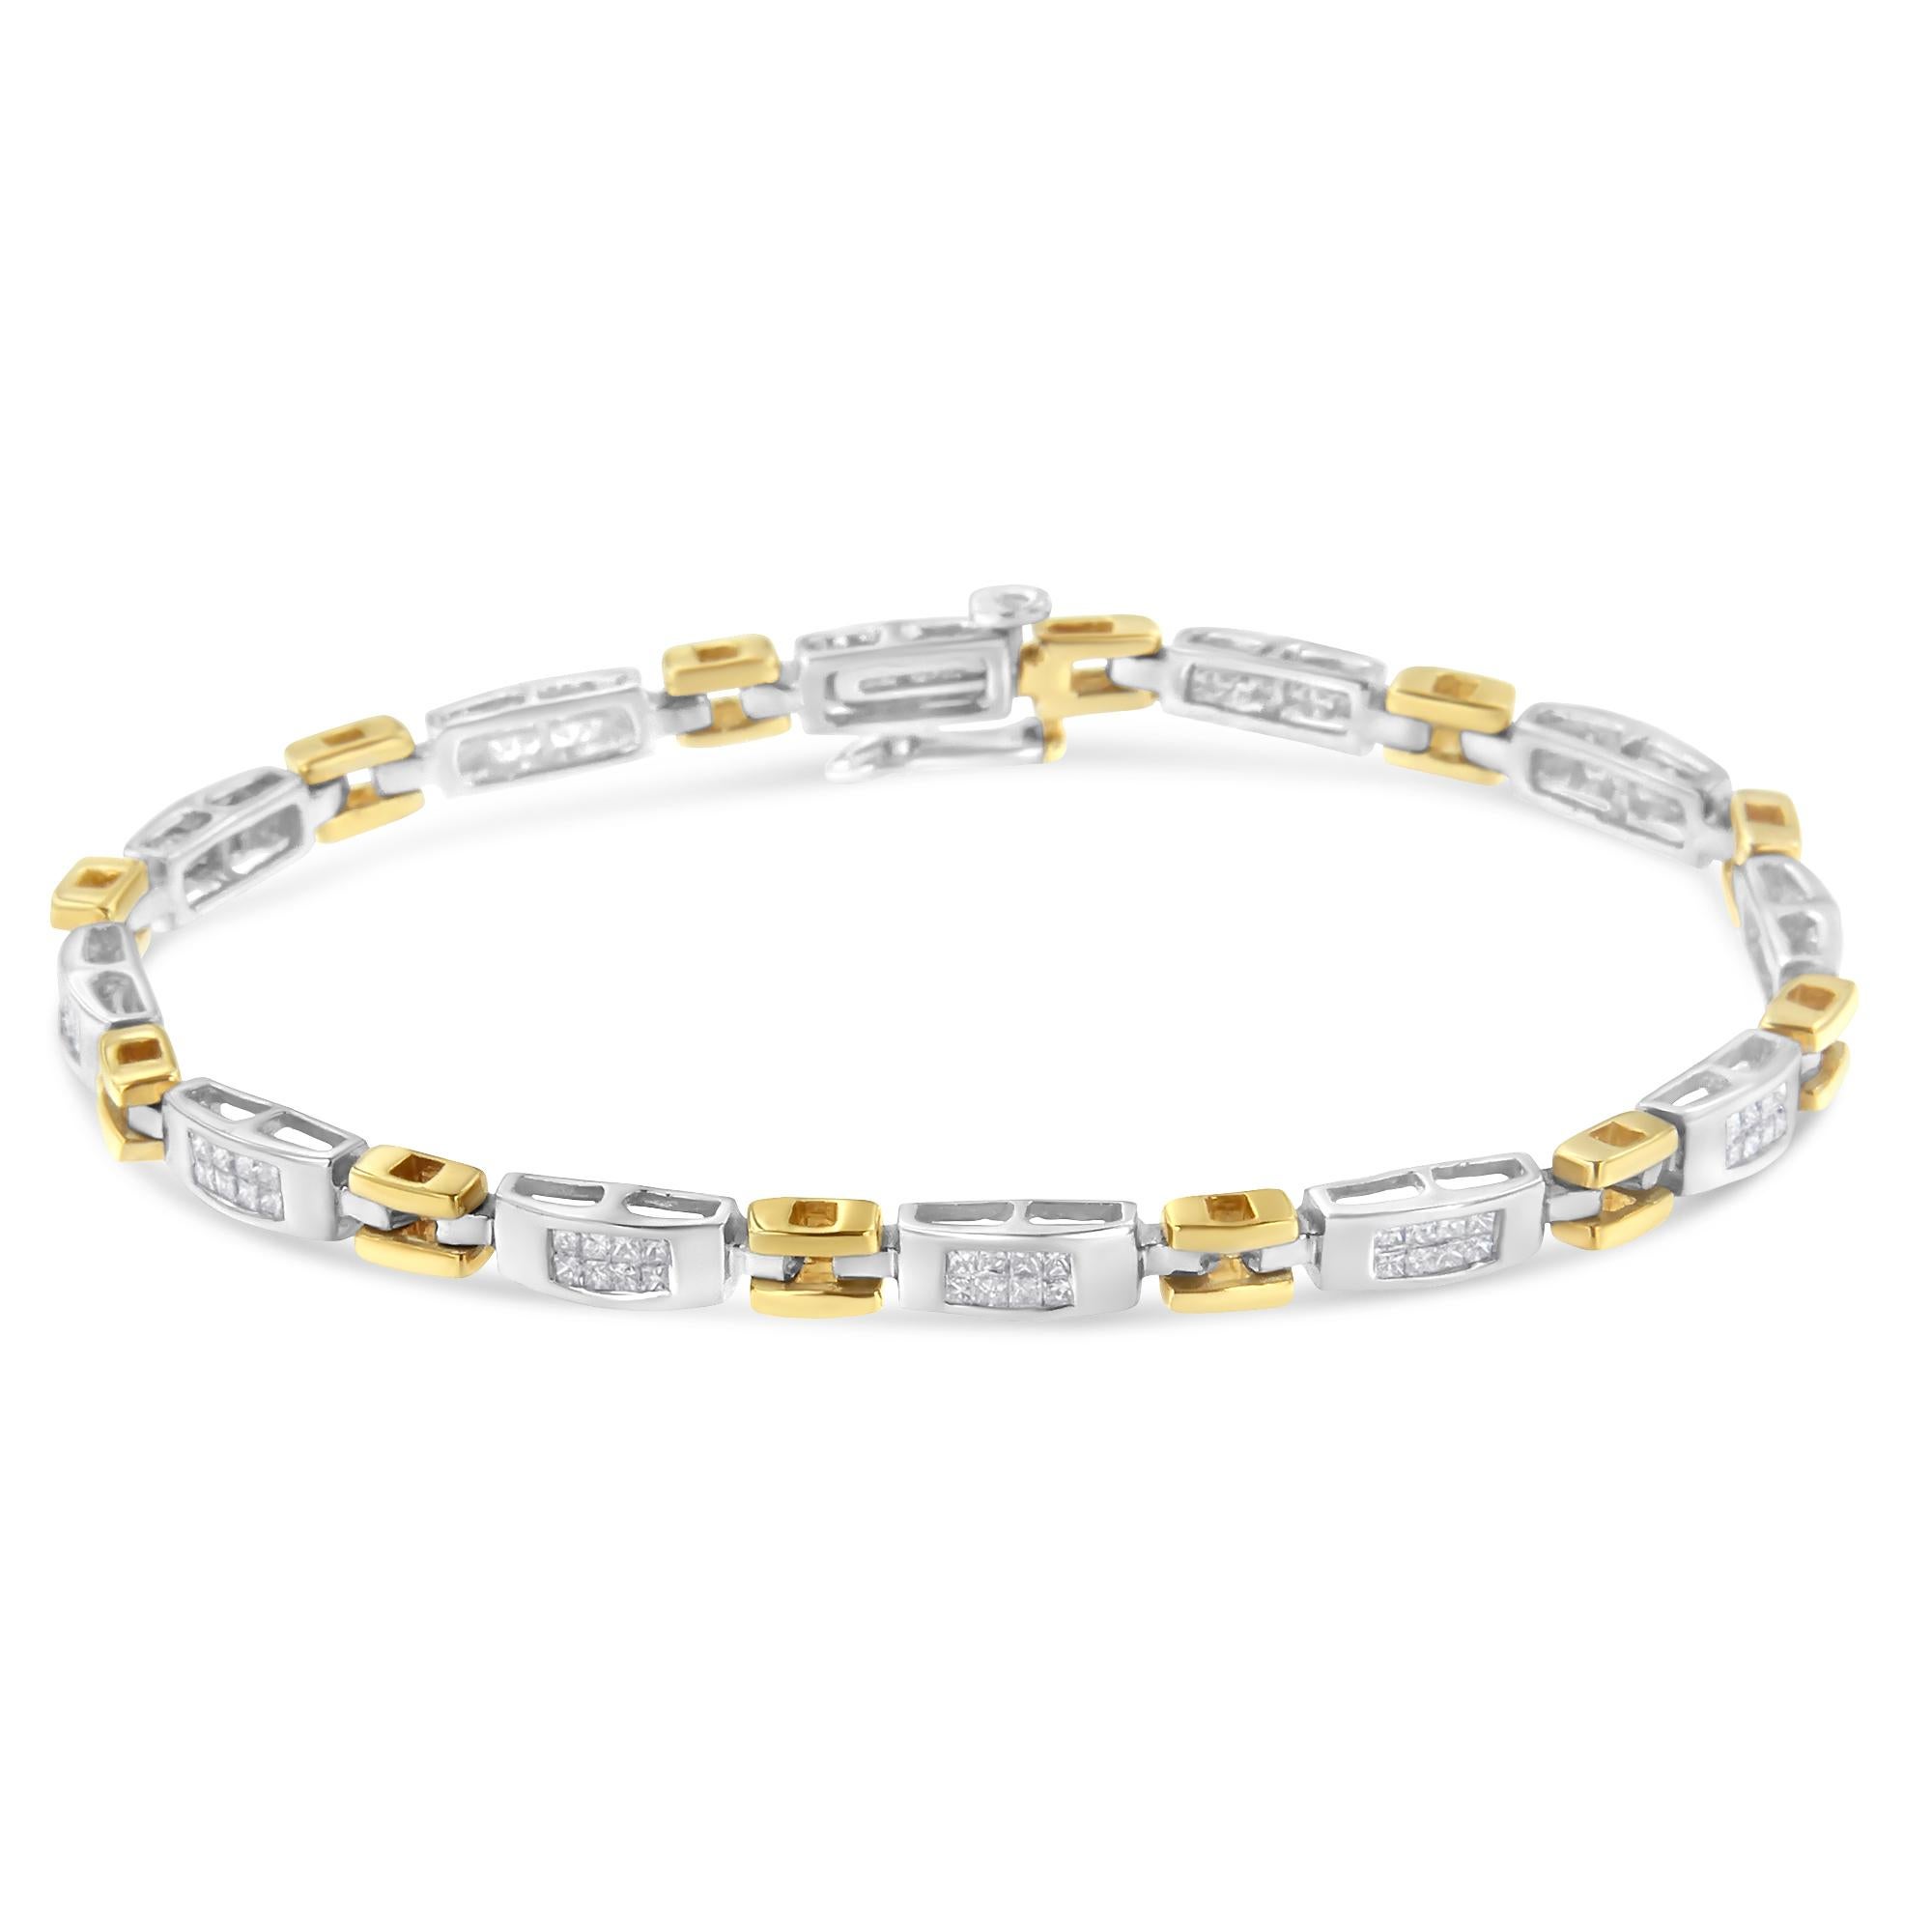 Dieses einzigartige geometrische Armband vereint offene Glieder aus Gelbgold mit diamantbesetzten, rechteckigen Bändern aus Weißgold. In einem auffälligen, ineinander greifenden Muster leuchtet jeder Stein im Prinzessinnenschliff hell auf und macht